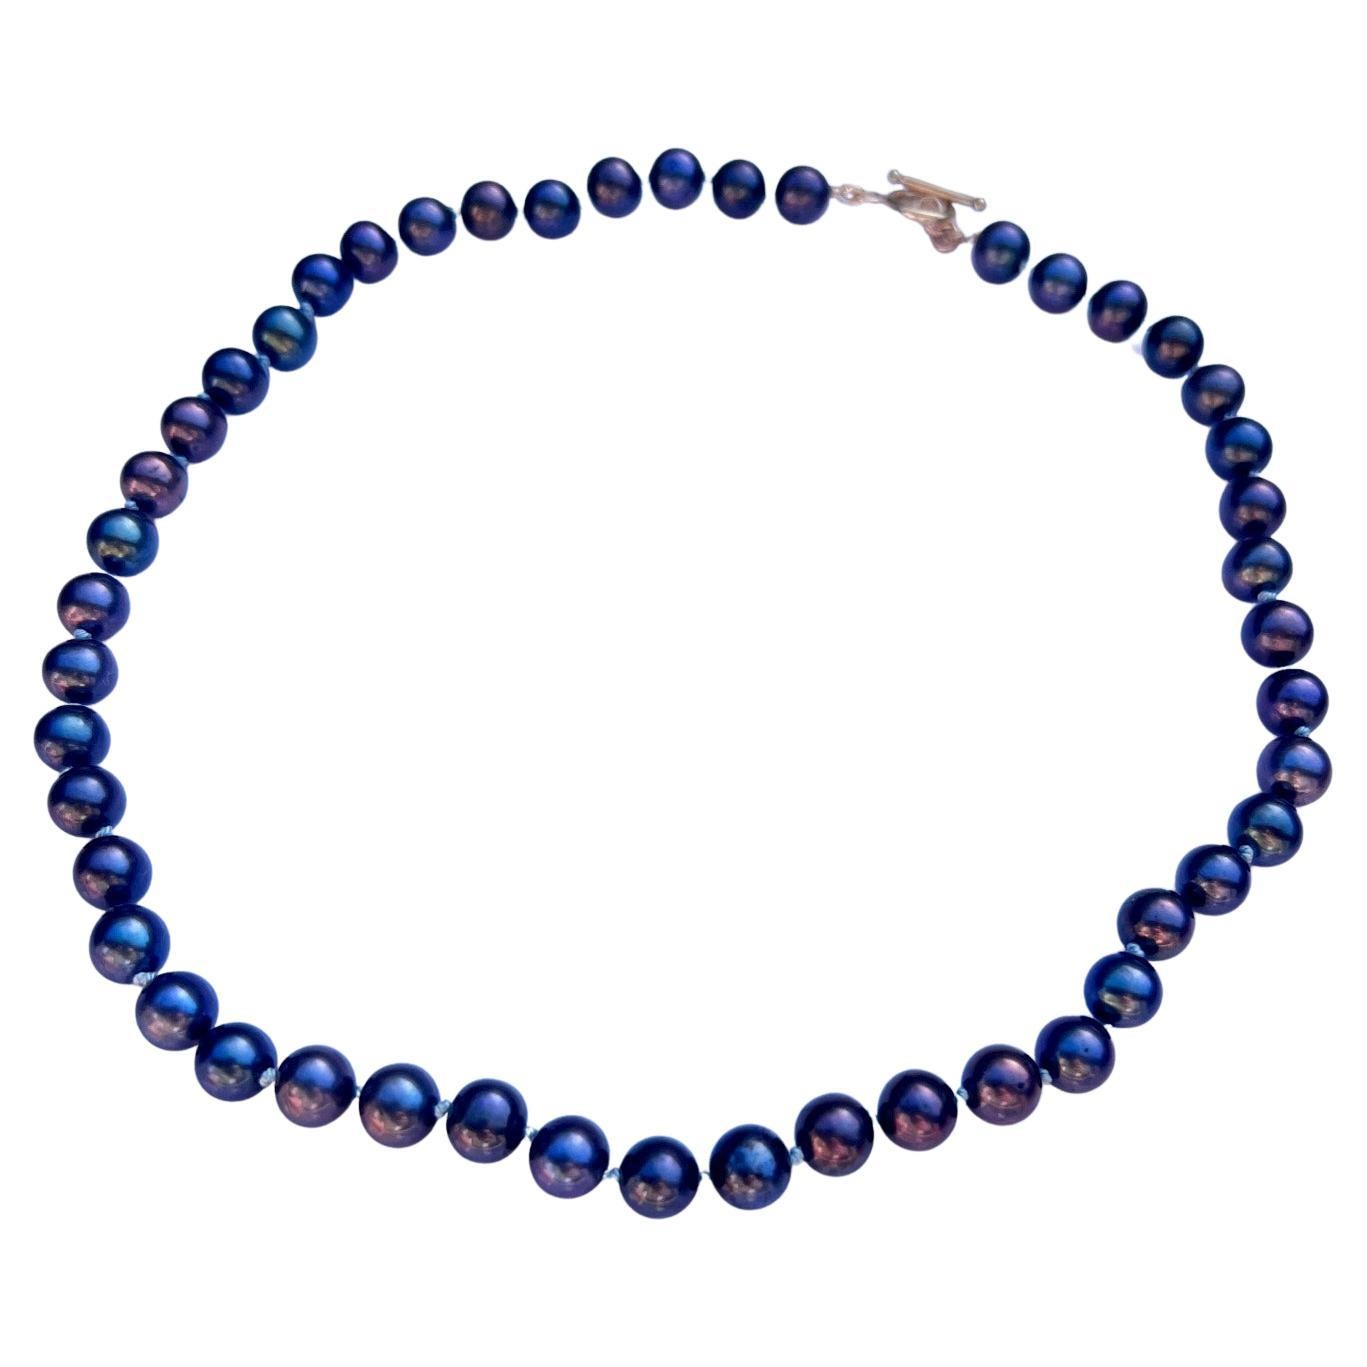 Collier ras du cou en perles noires Fil de soie bleu clair J Dauphin 16